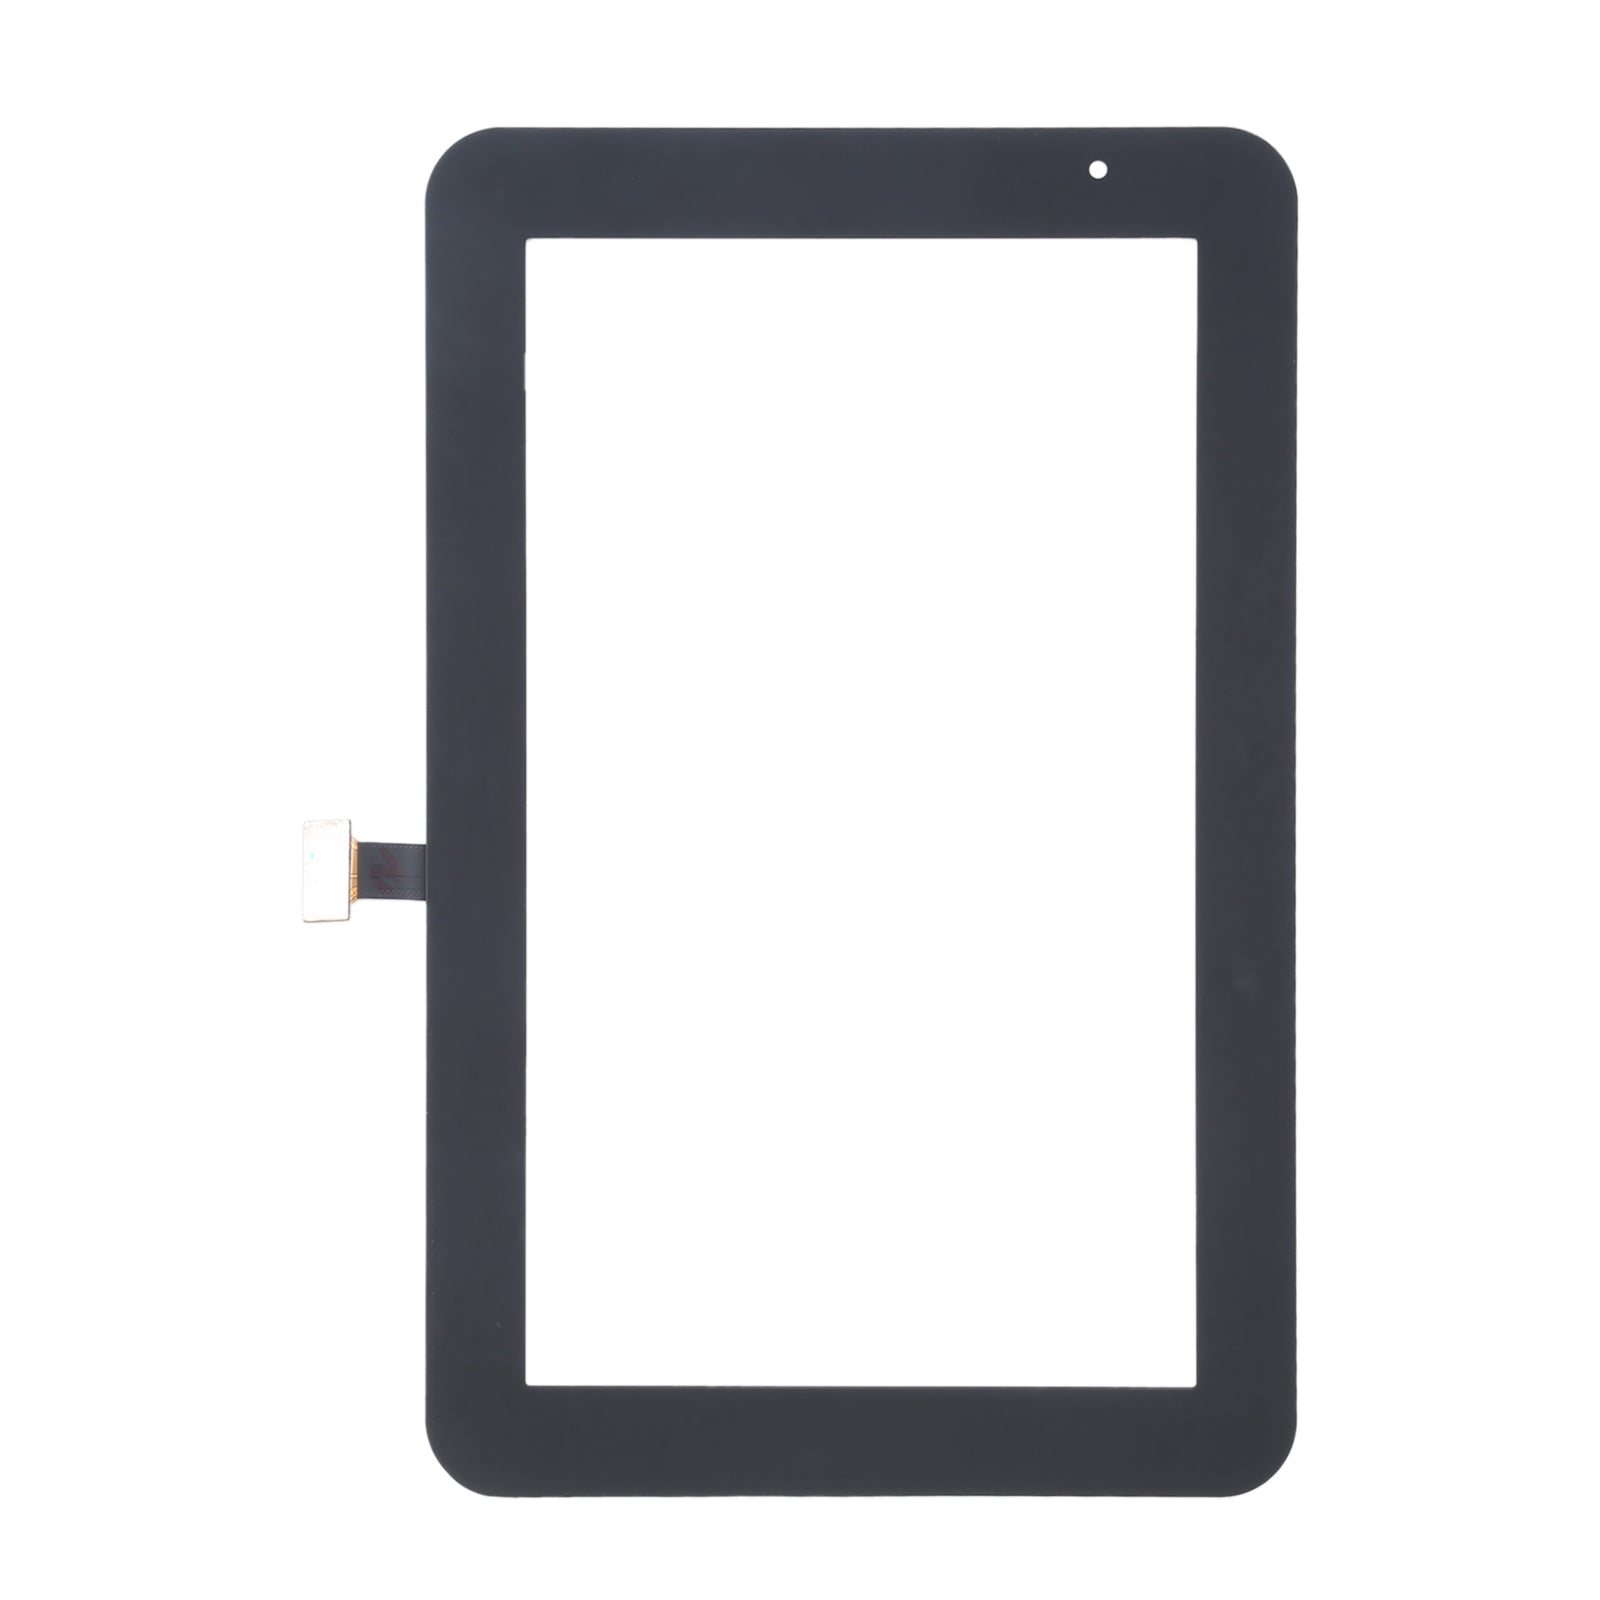 Pantalla Tactil Digitalizador Samsung Galaxy Tab 2 7.0 P3110 (Versión V) Negro